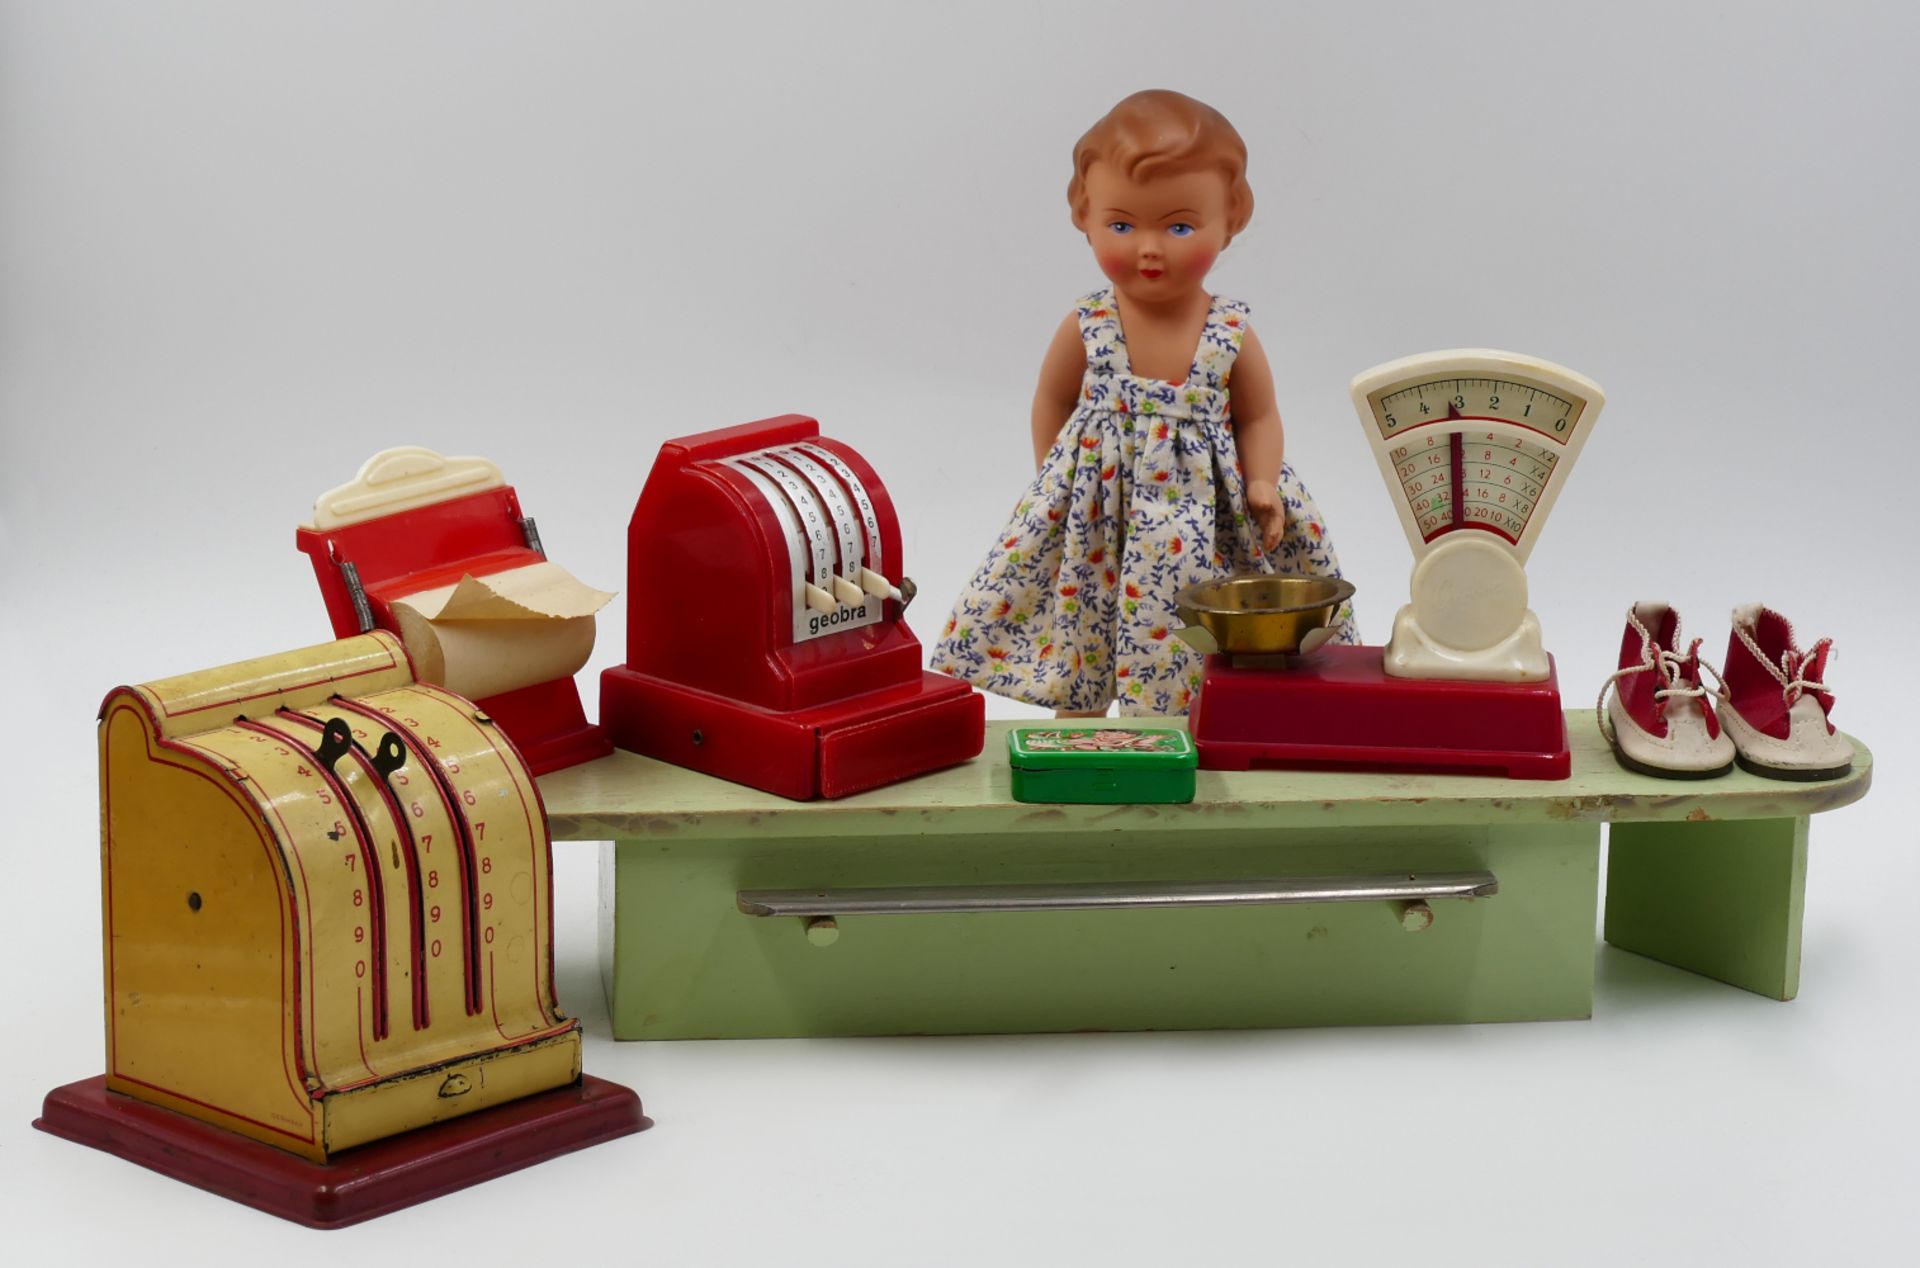 1 Puppenkaufladen wohl 1950er/60er Jahre ca. 25x70x35cm, mit Einrichtung, versch. Puppen Martha MAAR